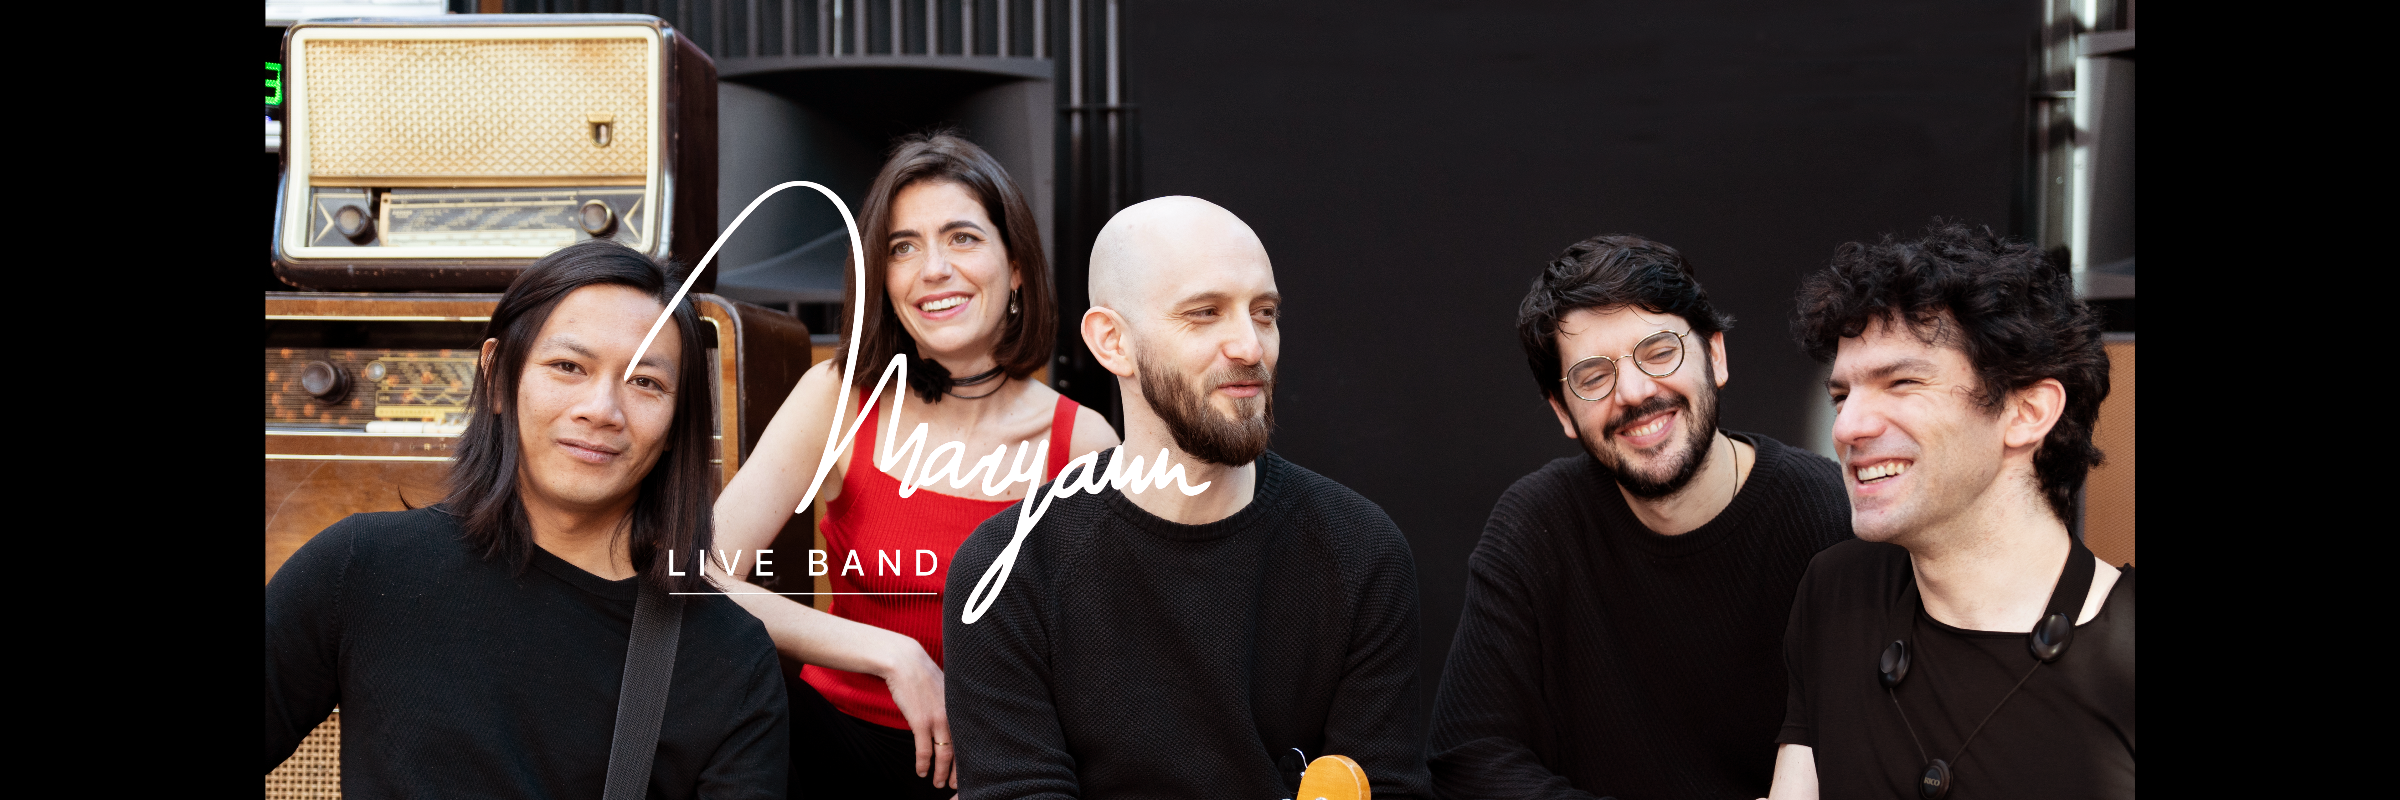 Maryann Live Band, groupe de musique Généraliste en représentation à Paris - photo de couverture n° 2